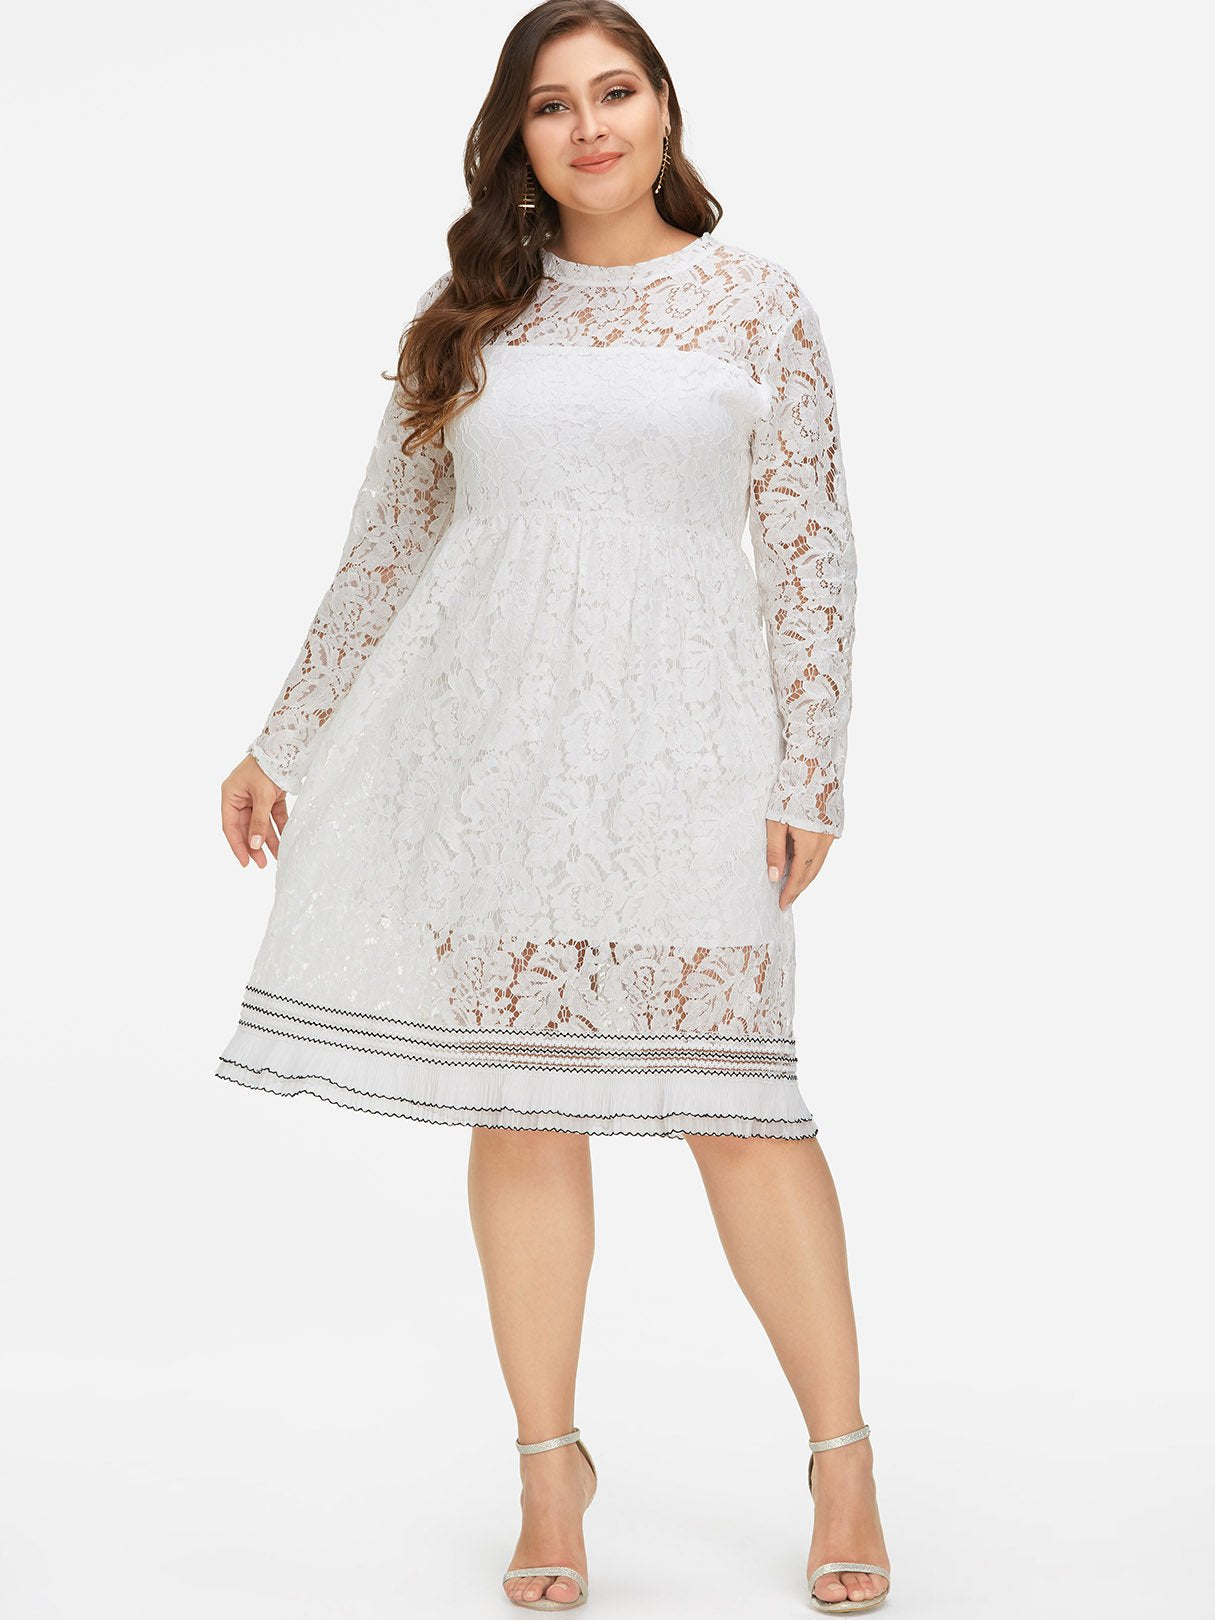 Wholesale Round Neck Lace Long Sleeve Ruffle Hem White Plus Size Dress